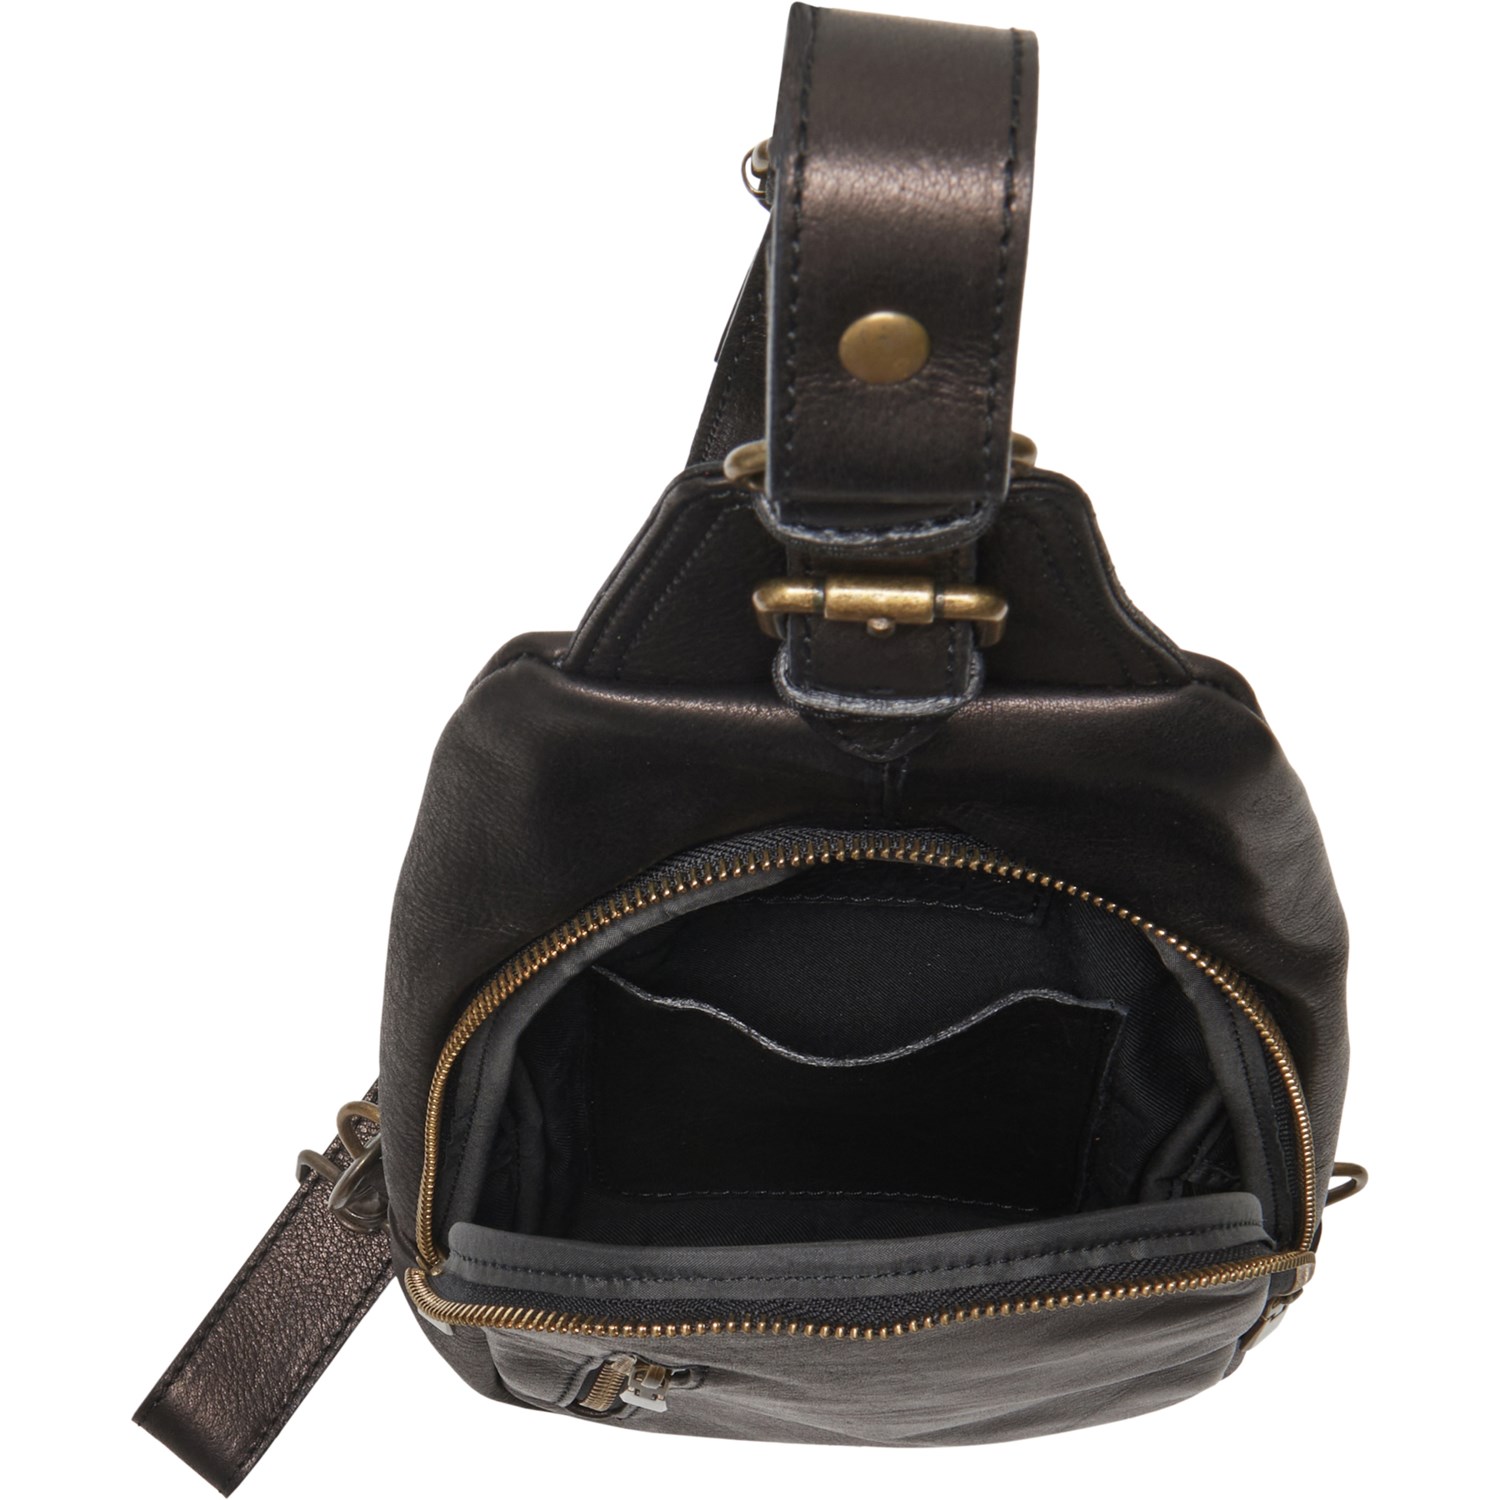 DIVA Sling Crossbody Bag (For Women) - Save 45%